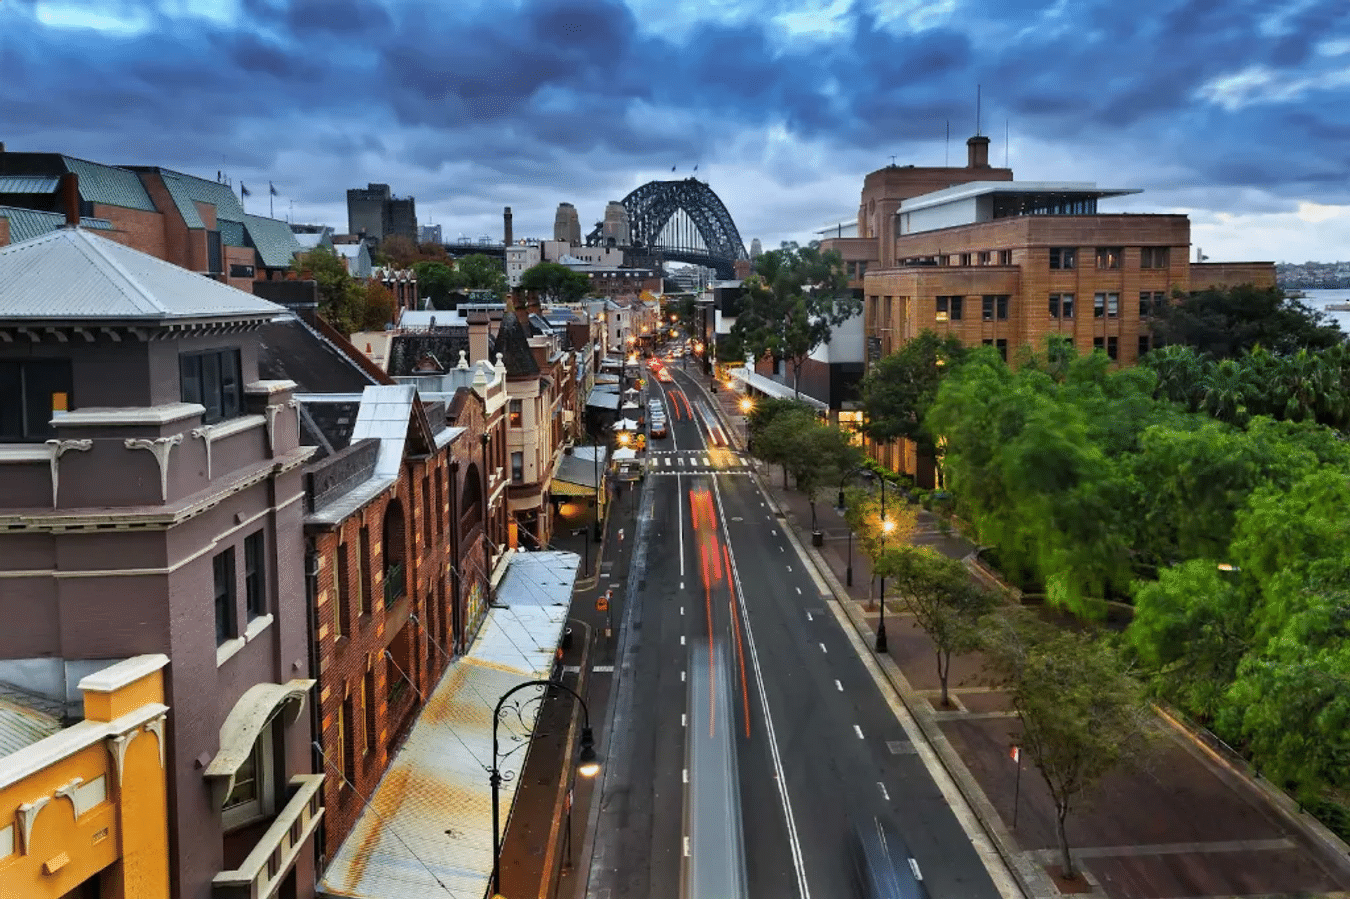 Khu phố cổ The Rocks - "Bảo tàng ngoài trời" của Sydney